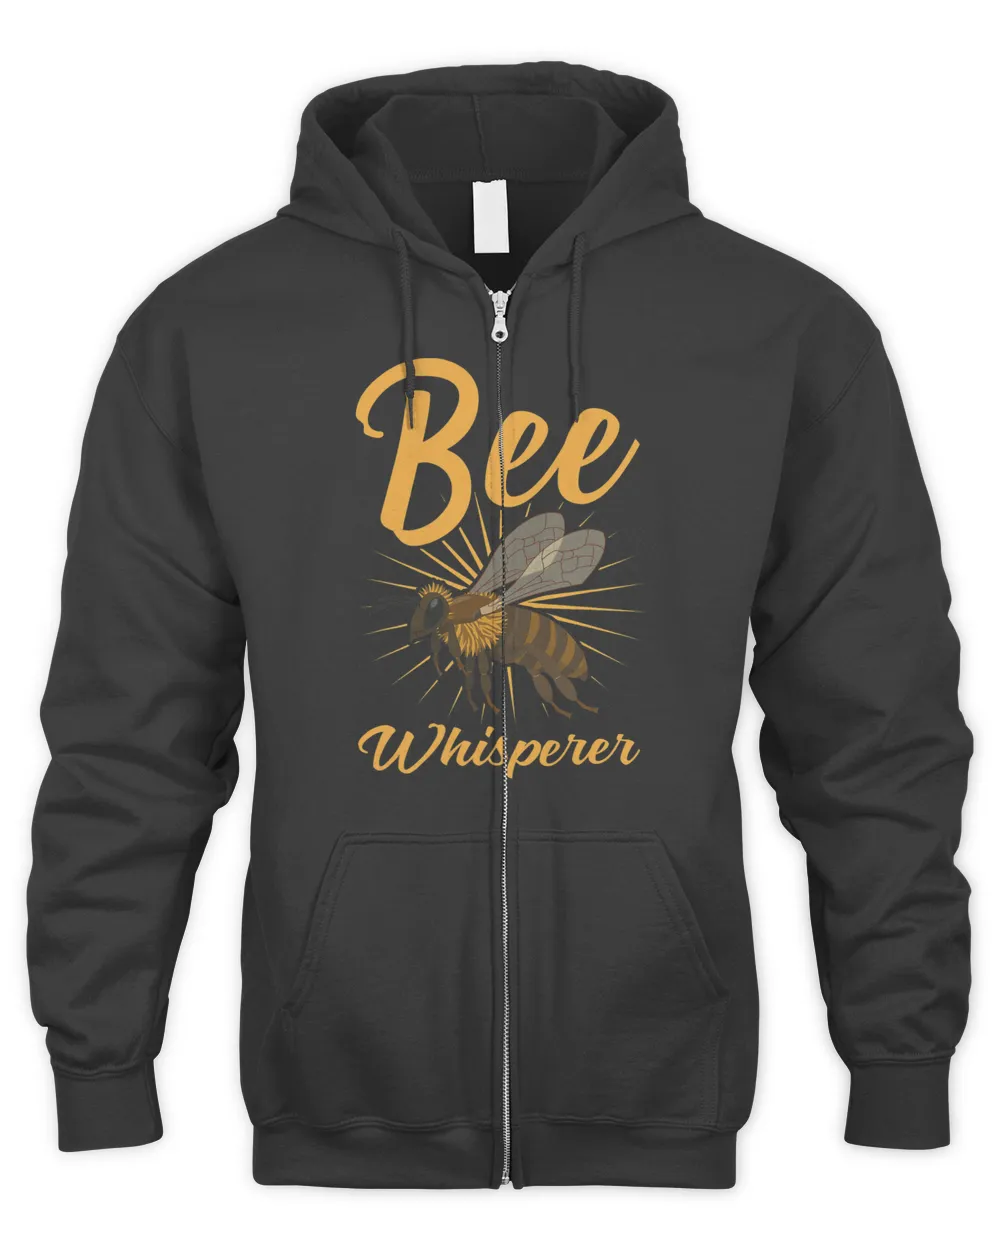 Honeybee Whisperer Beekeeper Beekeeping Lover